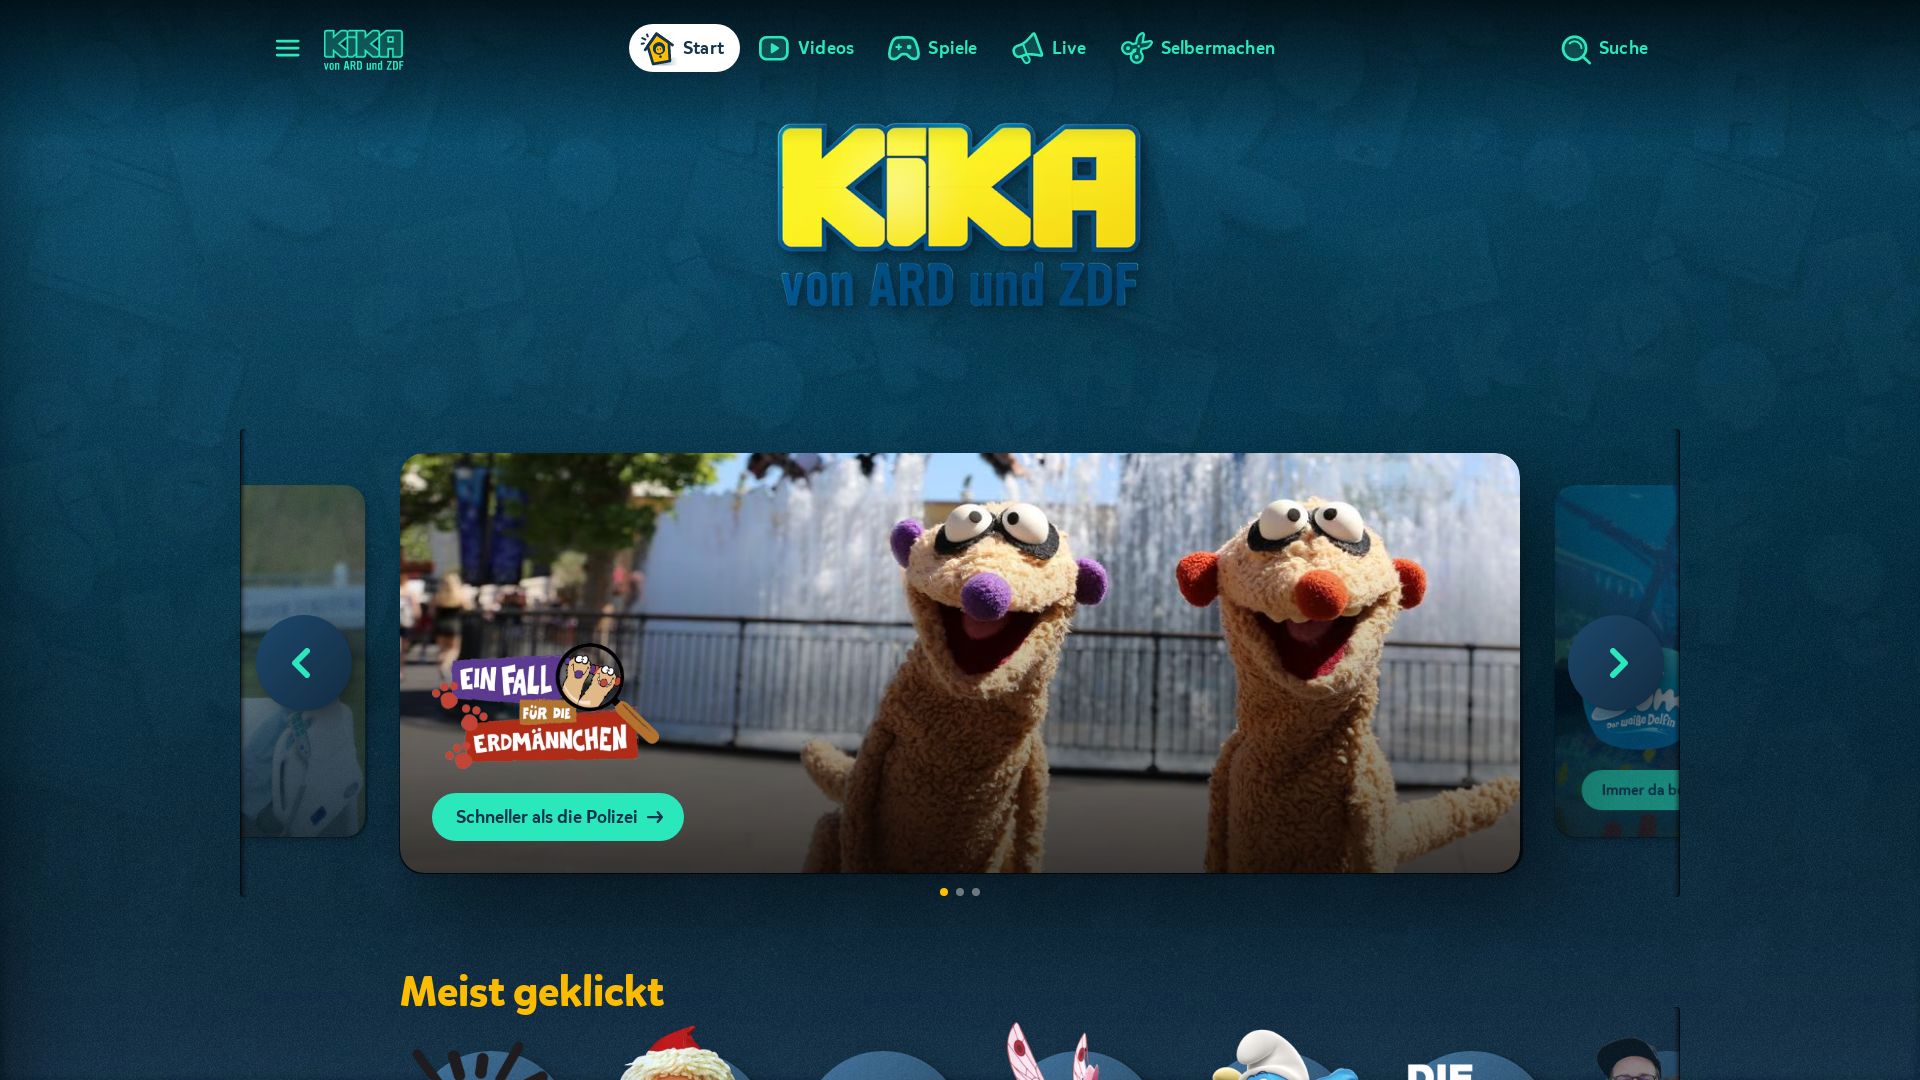 Website status kika.de is   ONLINE